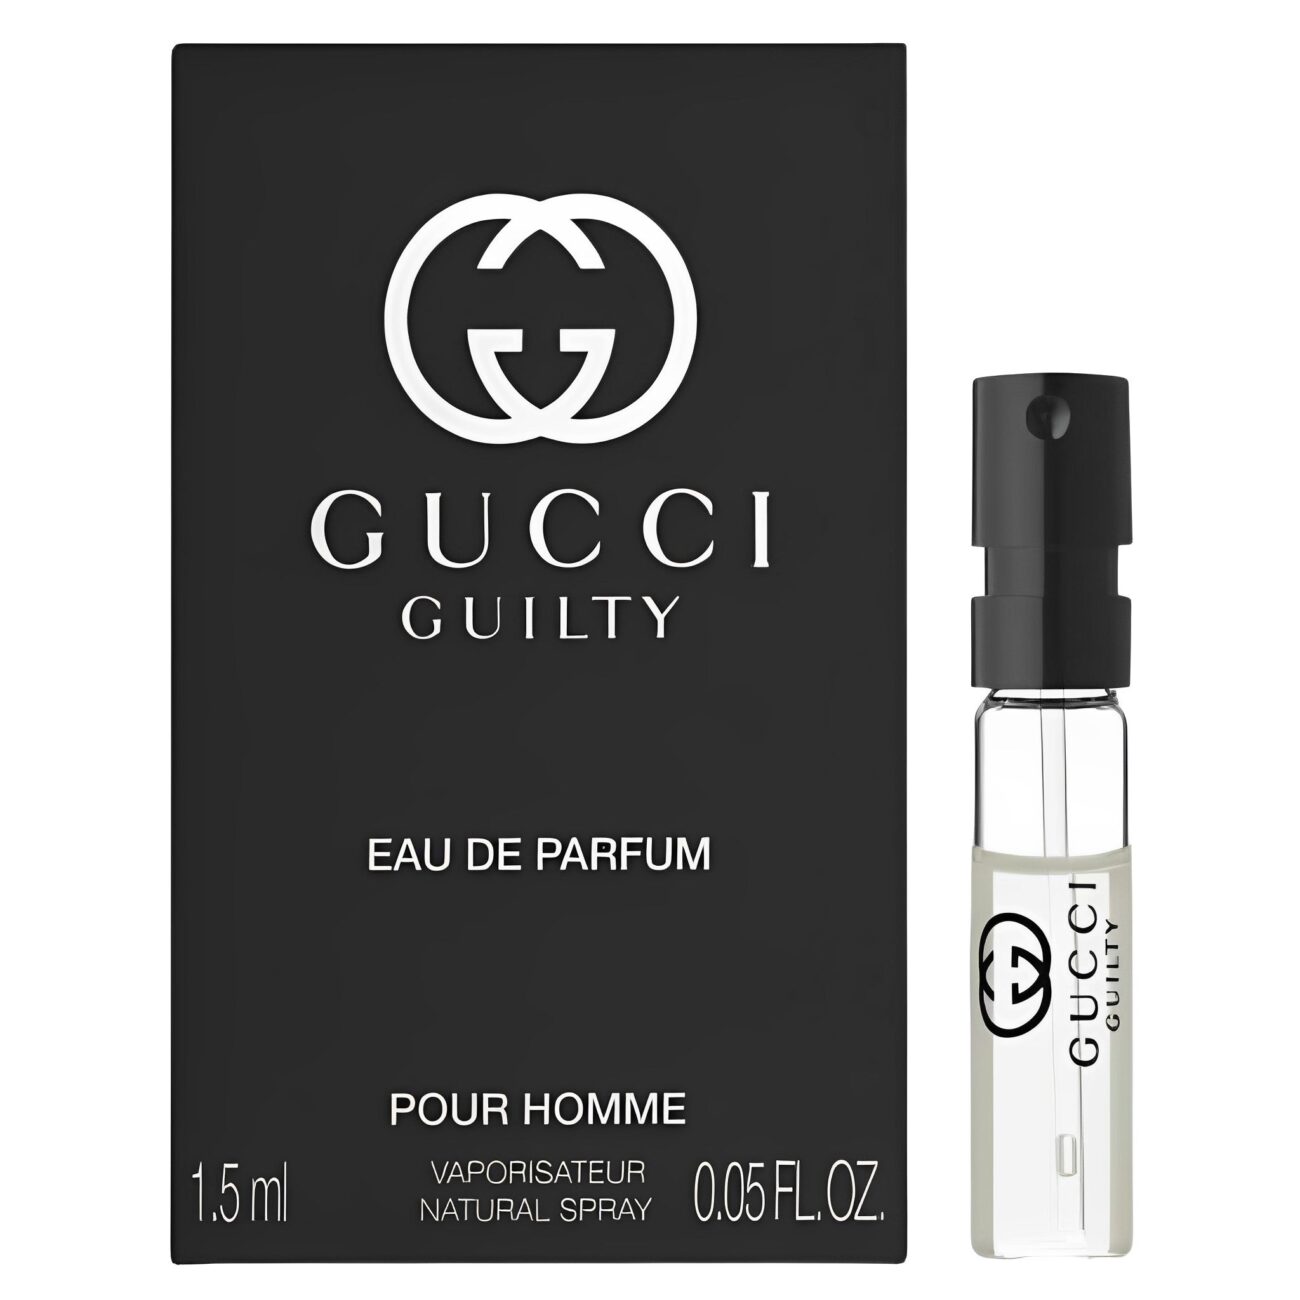 Guilty Pour Homme Eau de Parfum Sample-Gucci